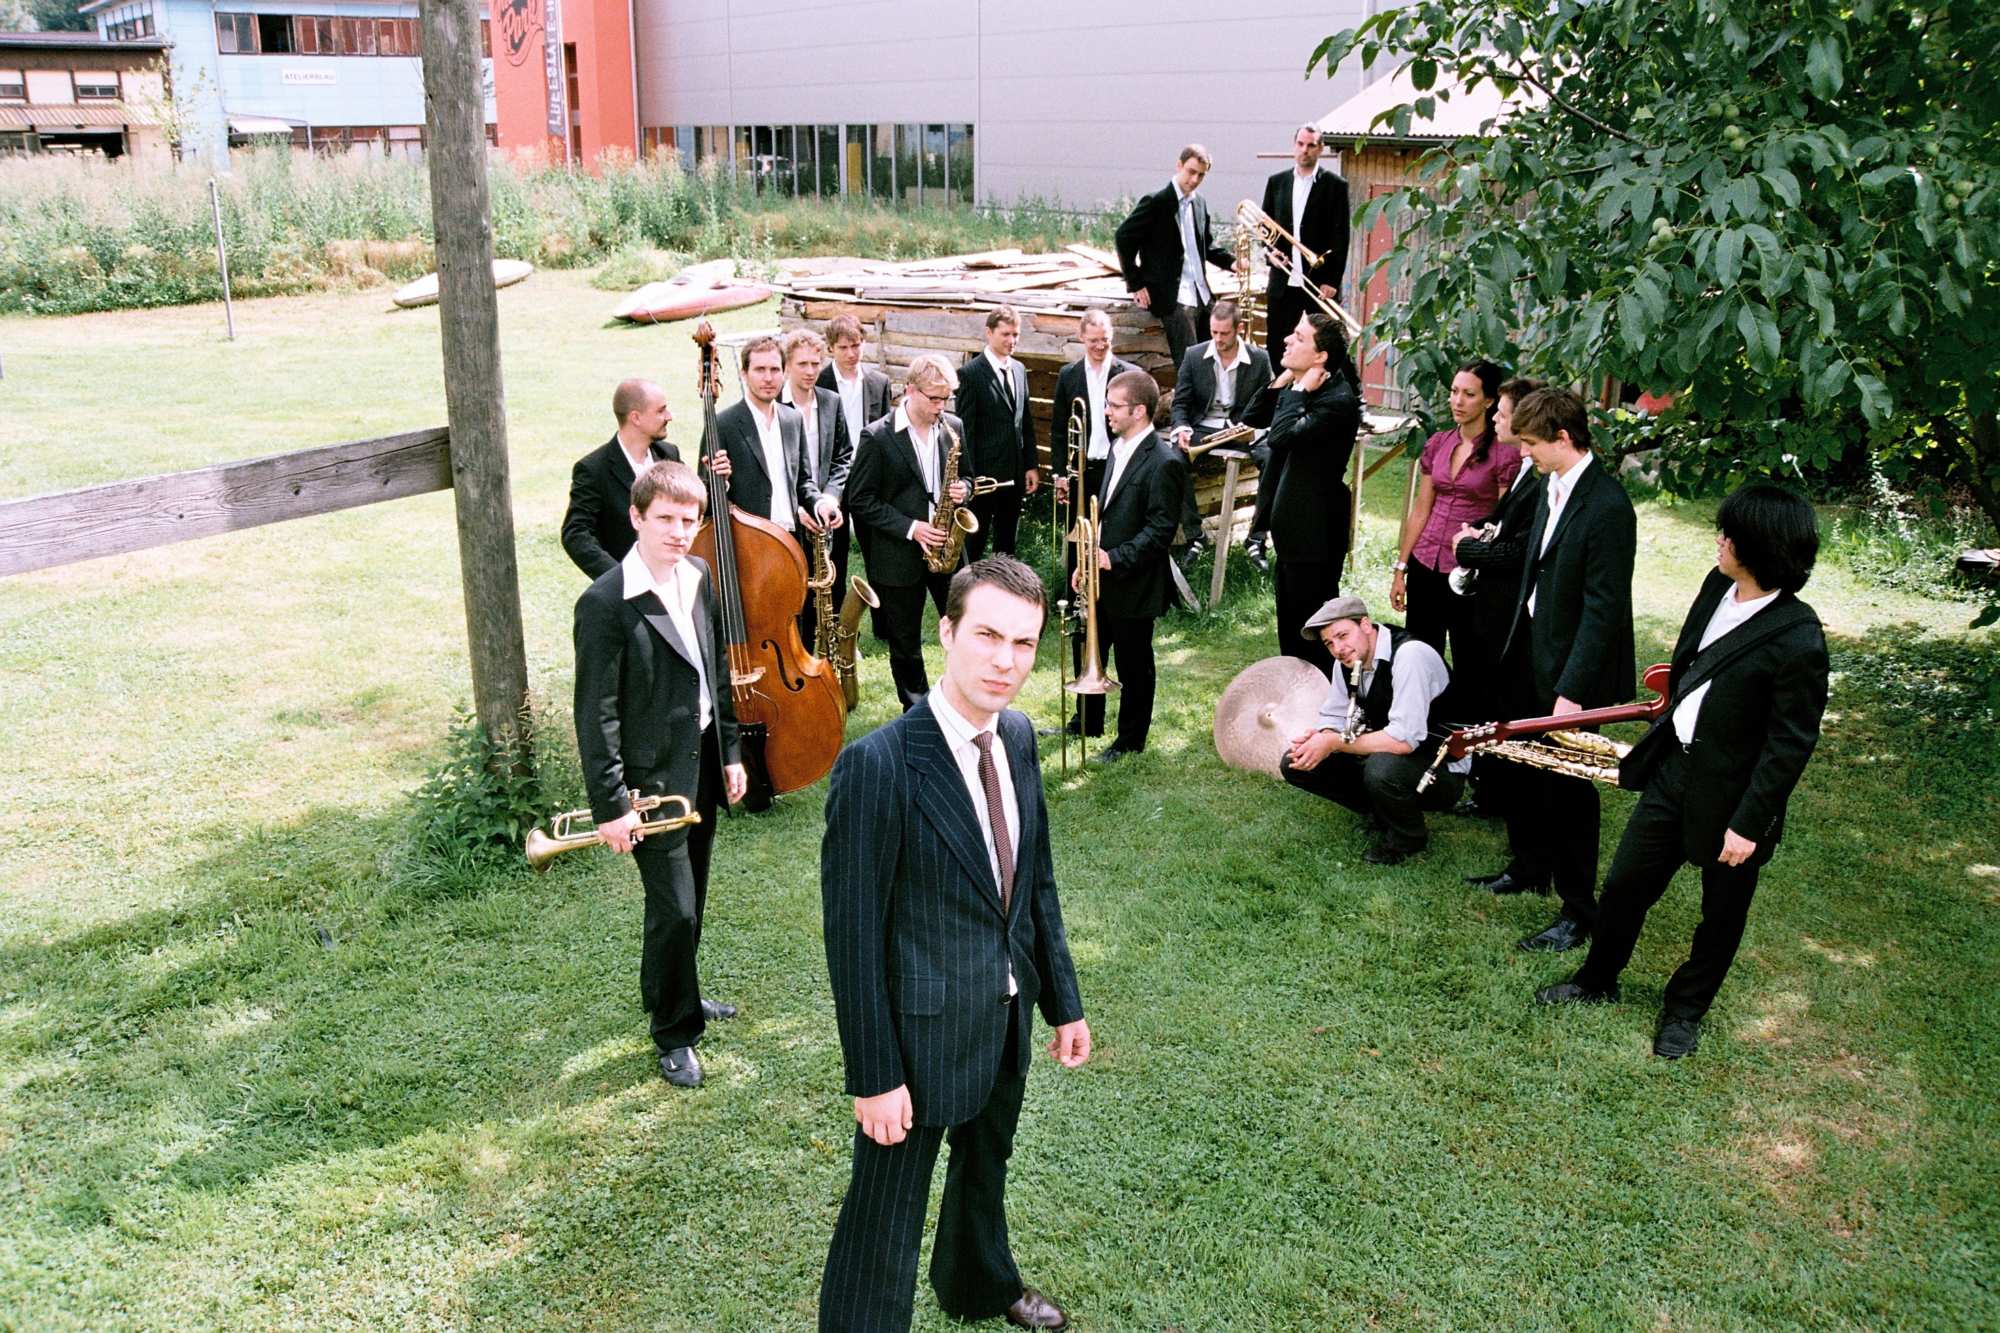 Lucerne Jazz Orchestra